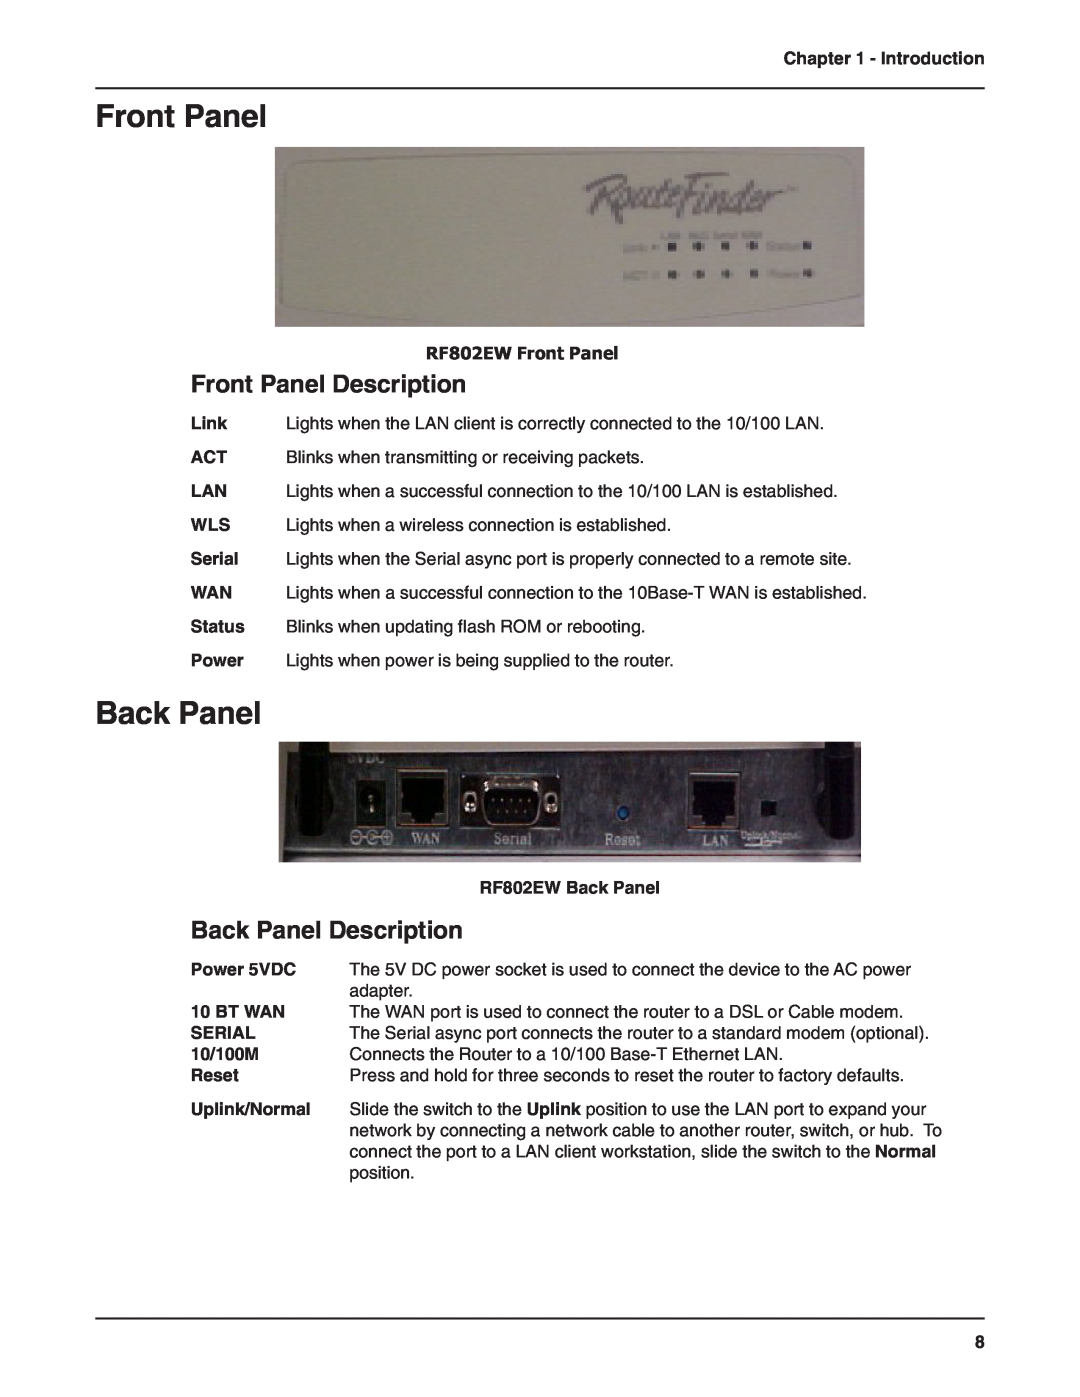 Multi-Tech Systems Front Panel Description, Back Panel Description, RF802EW Front Panel, RF802EW Back Panel 